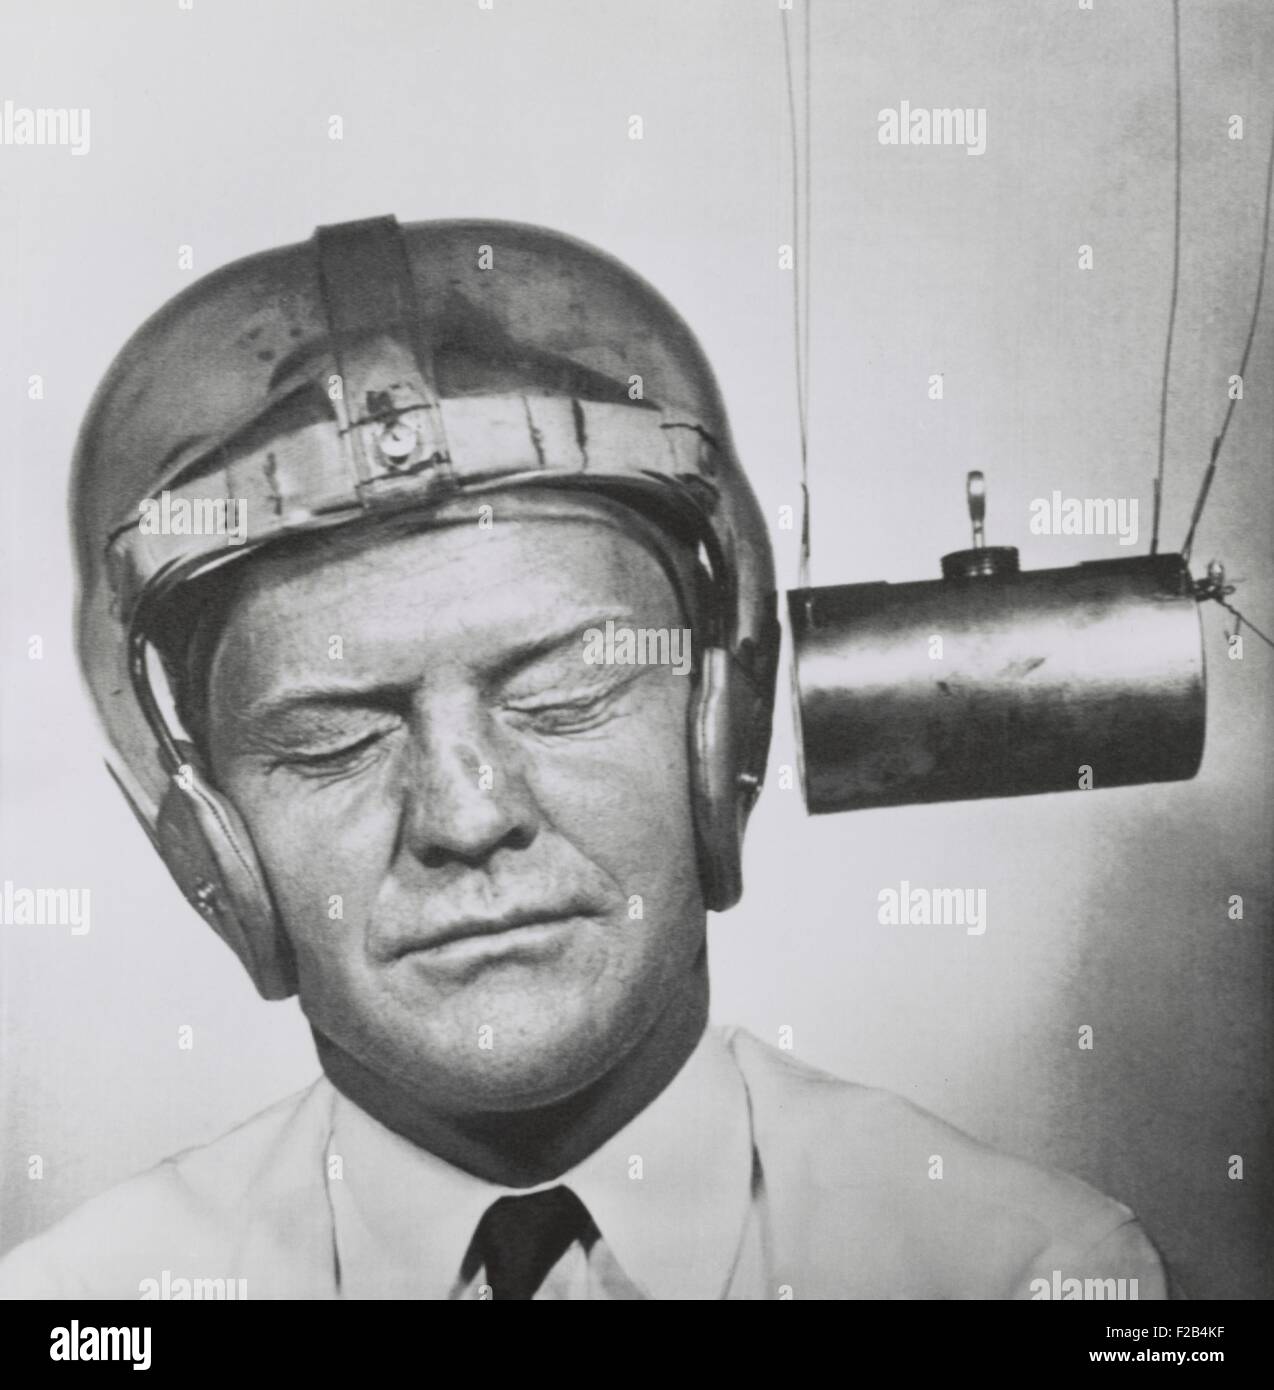 Pendel hämmerte einen Kunststoff Helm getragen zu Testzwecken um Kopfbedeckungen für Fußball-Spieler zu verbessern. Sept.13, 1950 - (BSLOC 2015 1 219) Stockfoto